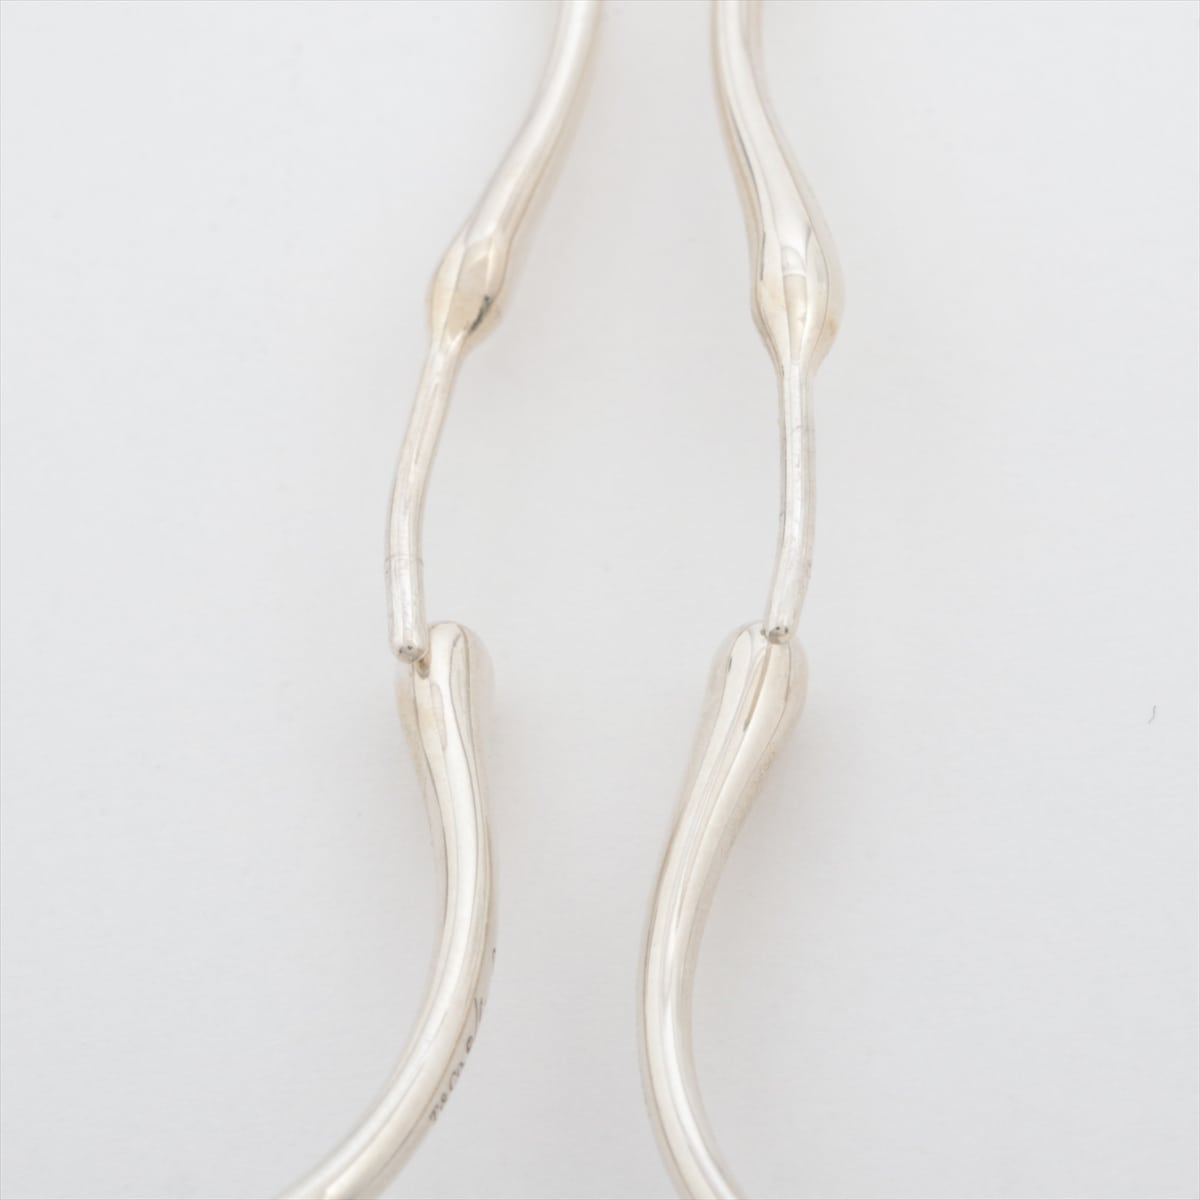 Tiffany Open Heart Hoop Earrings 925 9.4g Silver